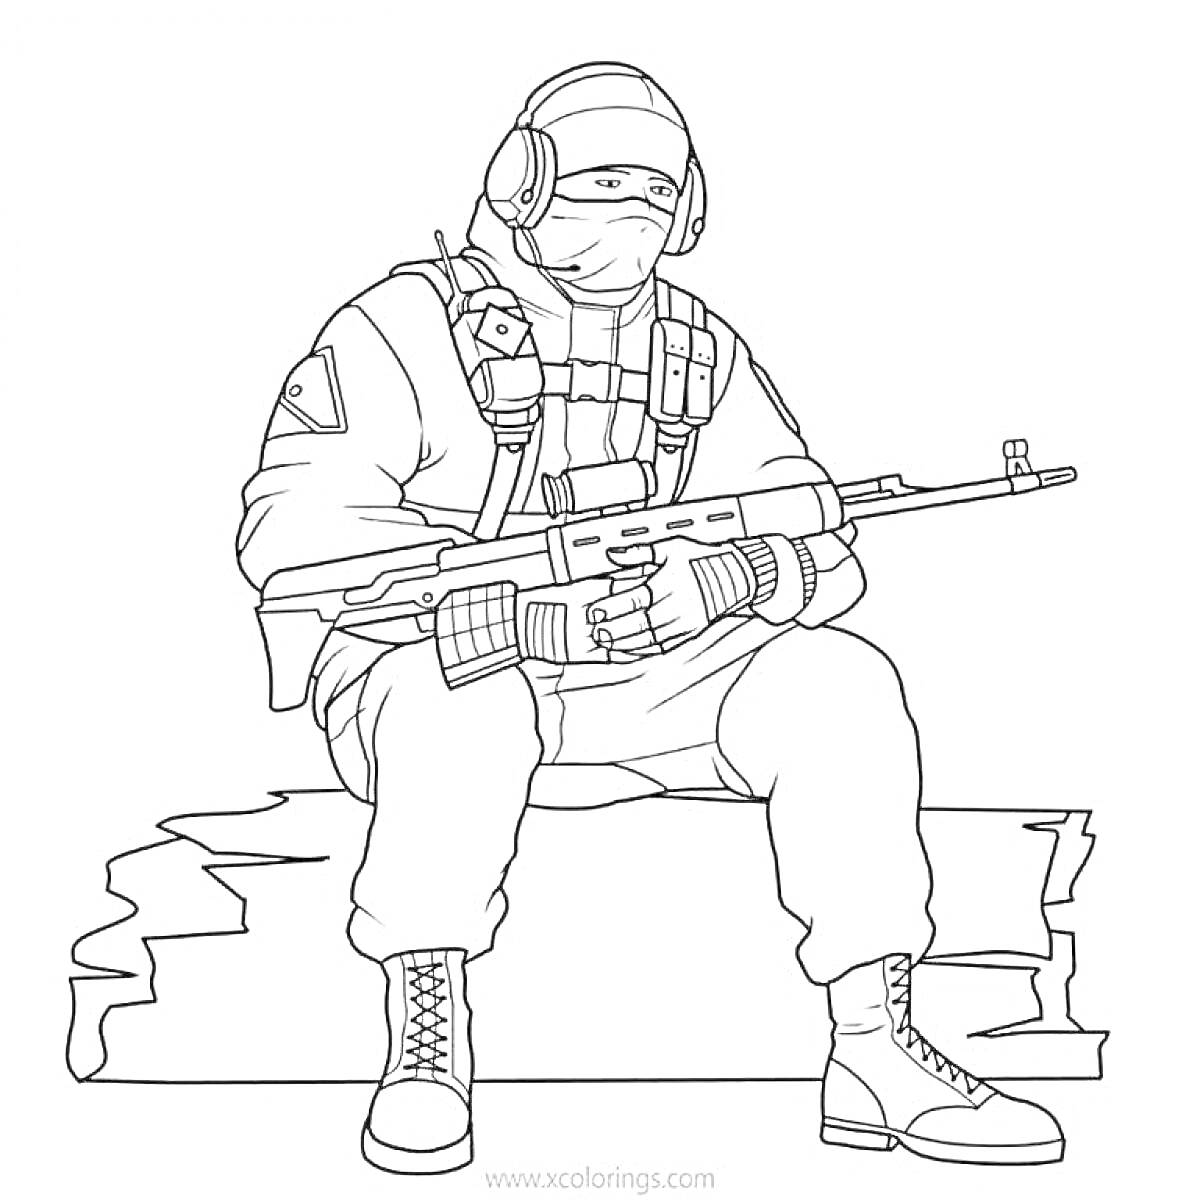 Спецназовец, сидящий на обломке, в полной экипировке, с оружием